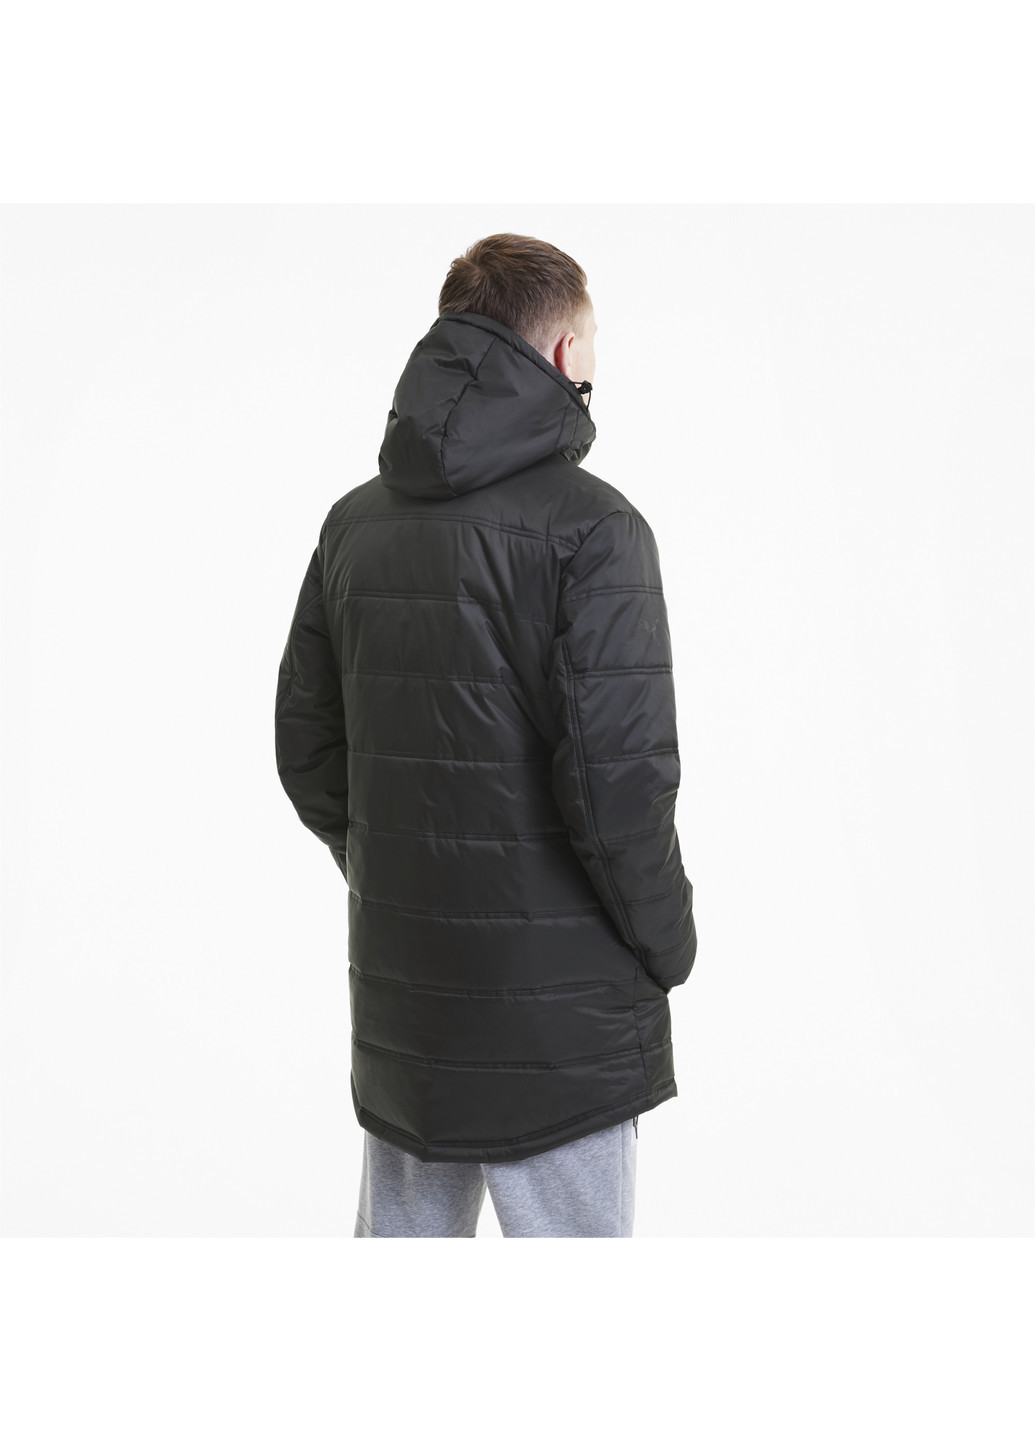 Черная демисезонная куртка bmw mms rct explorer jacket Puma